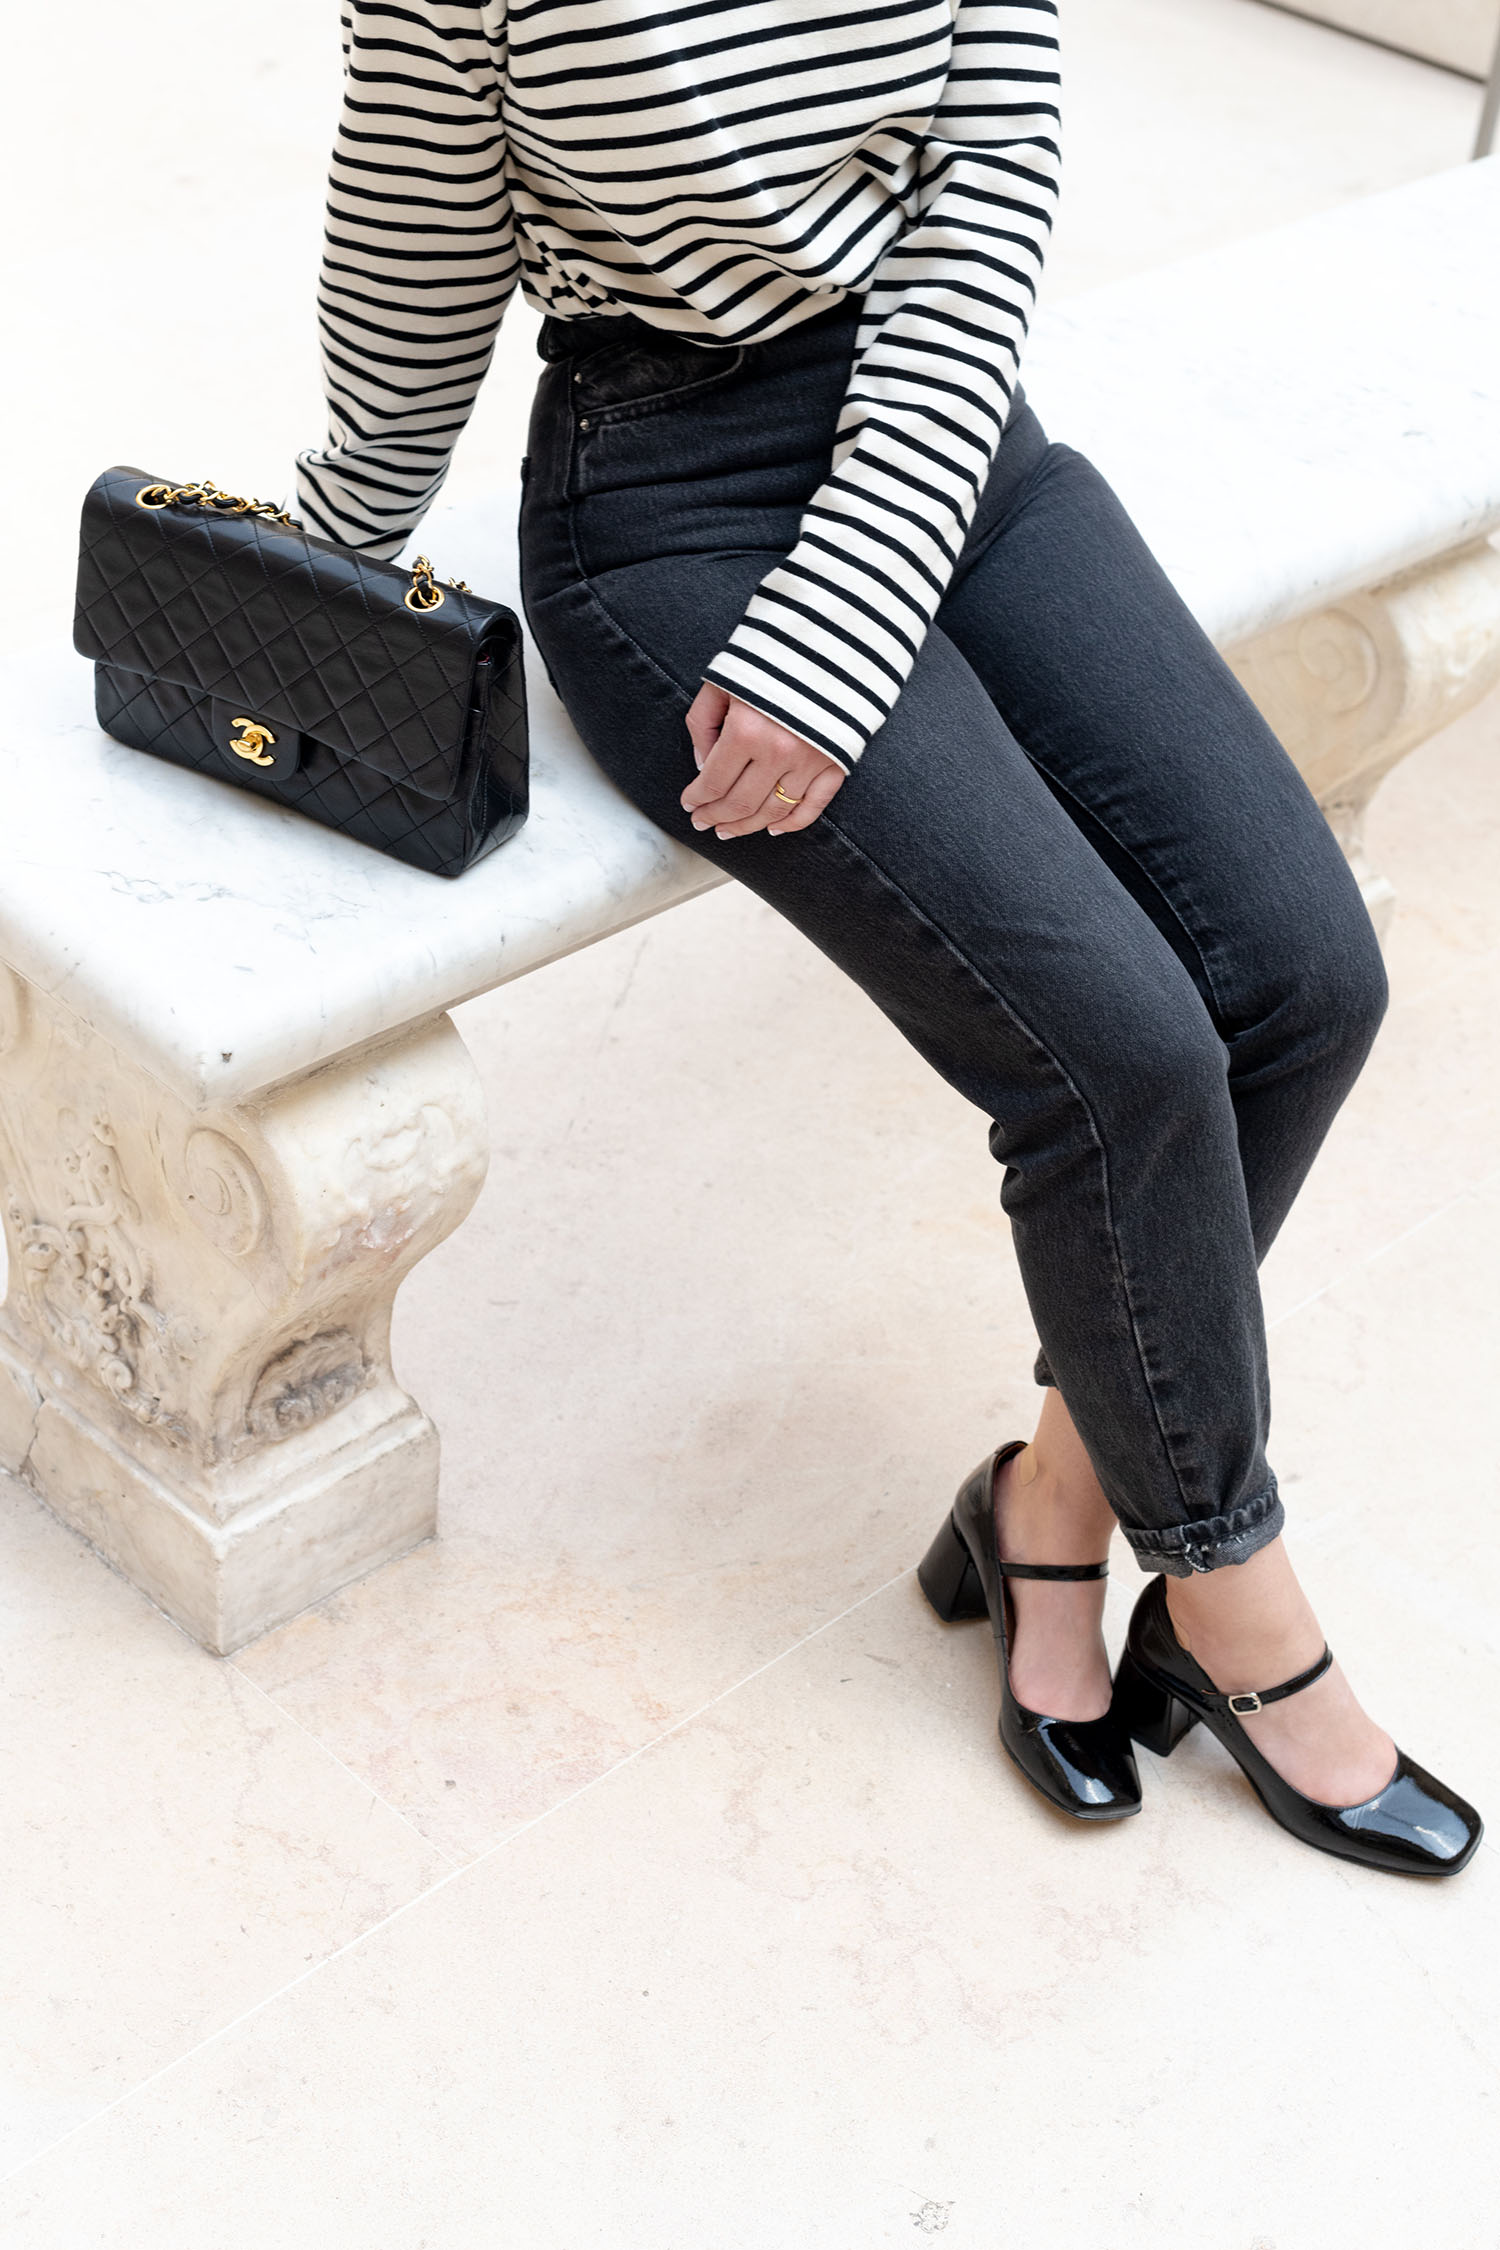 Coco & Voltaire - Jonak babies, Chanel double flap handbag, Zara jeans